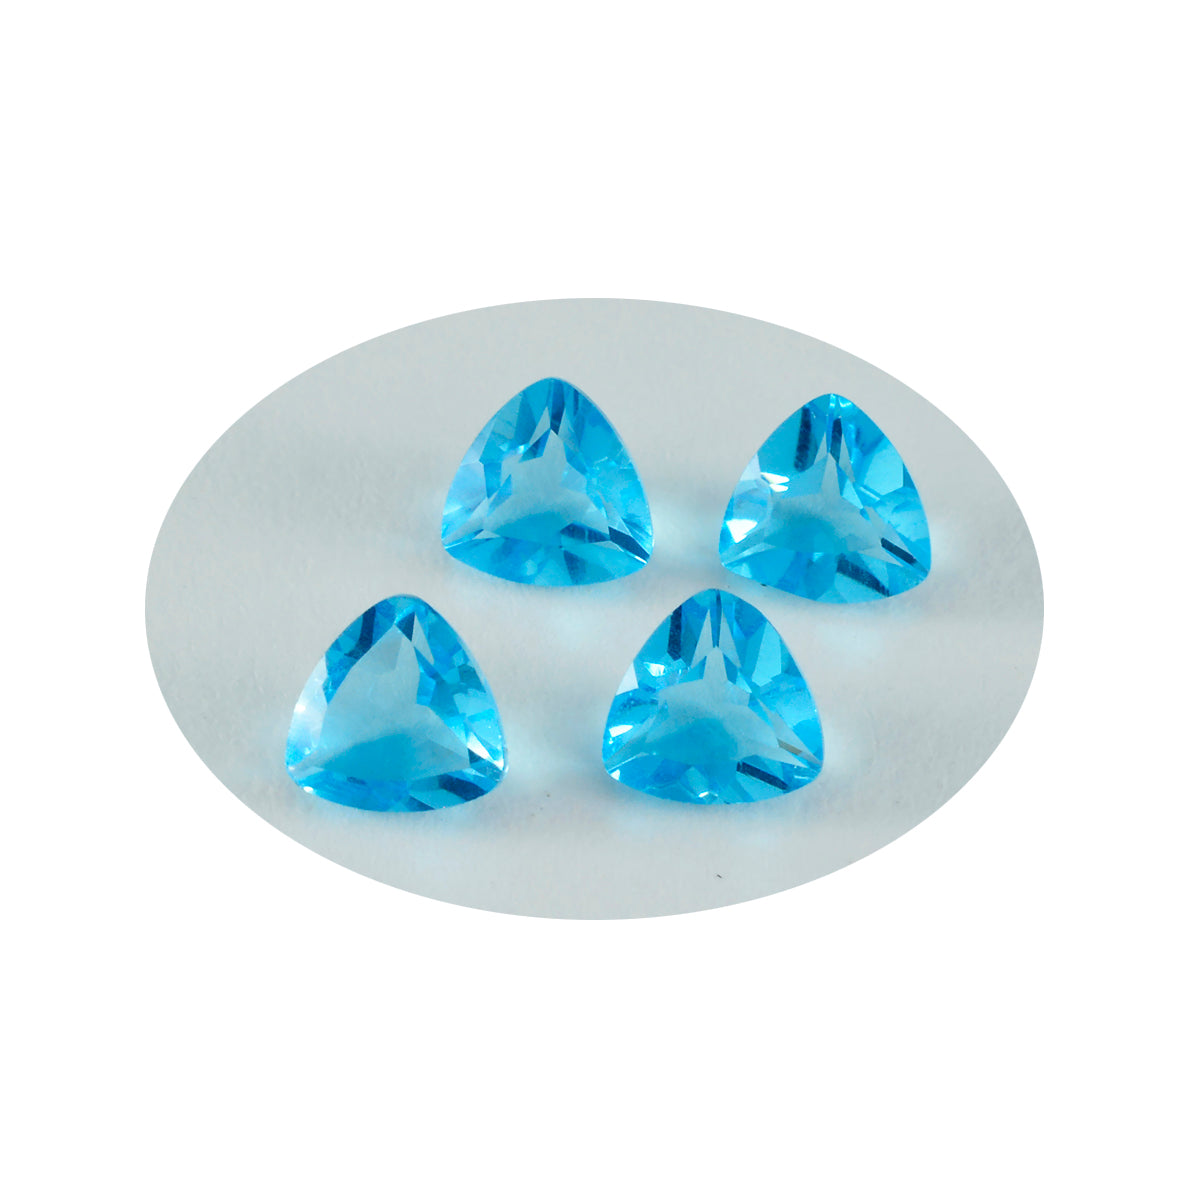 Riyogems 1pc topaze bleue cz facettes 9x9mm forme trillion superbe qualité gemme